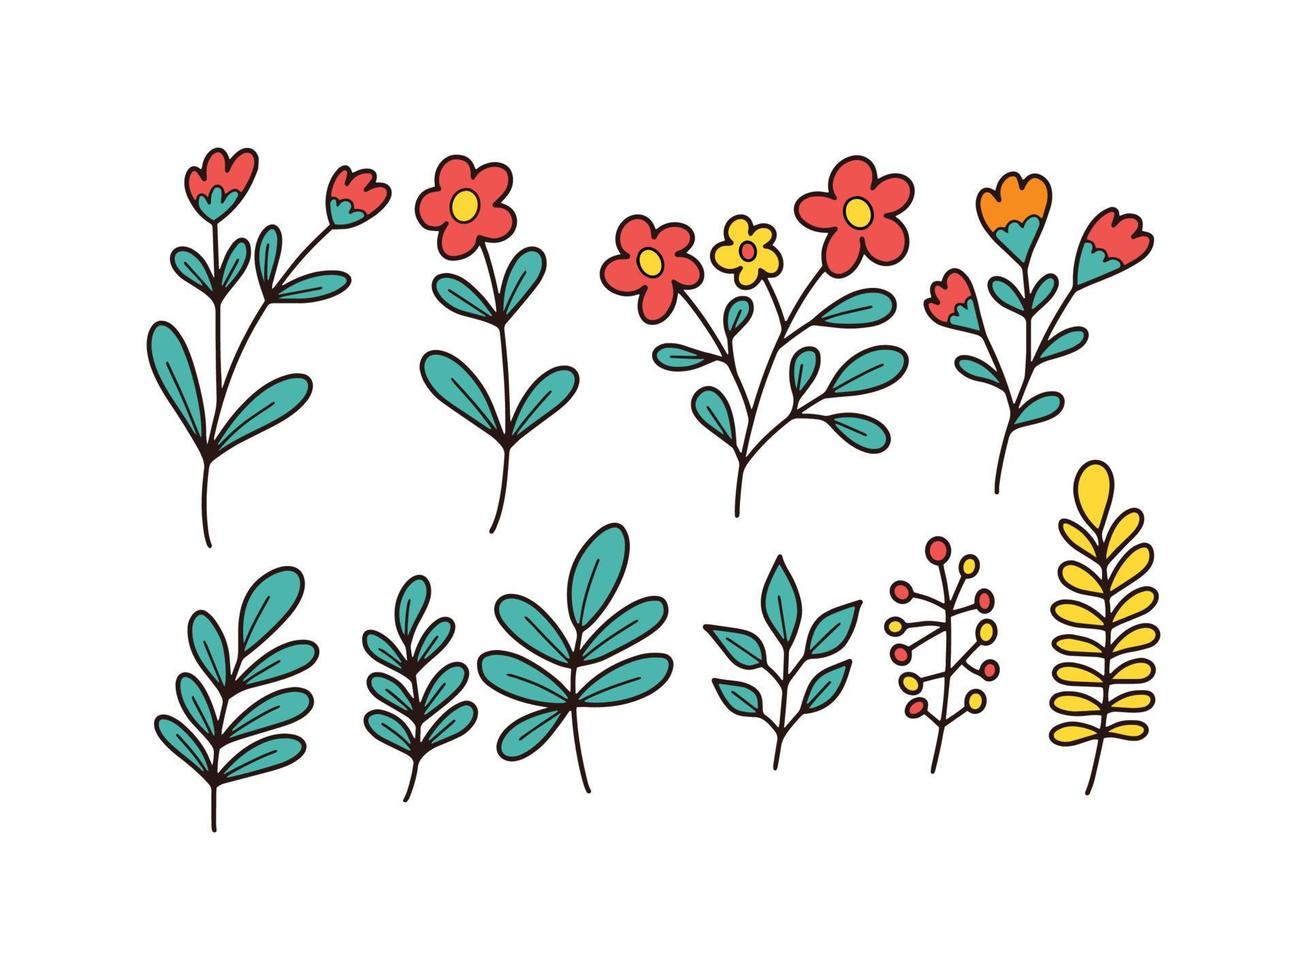 kleurrijke doodle illustratie van wilde bloemen en bladeren vector